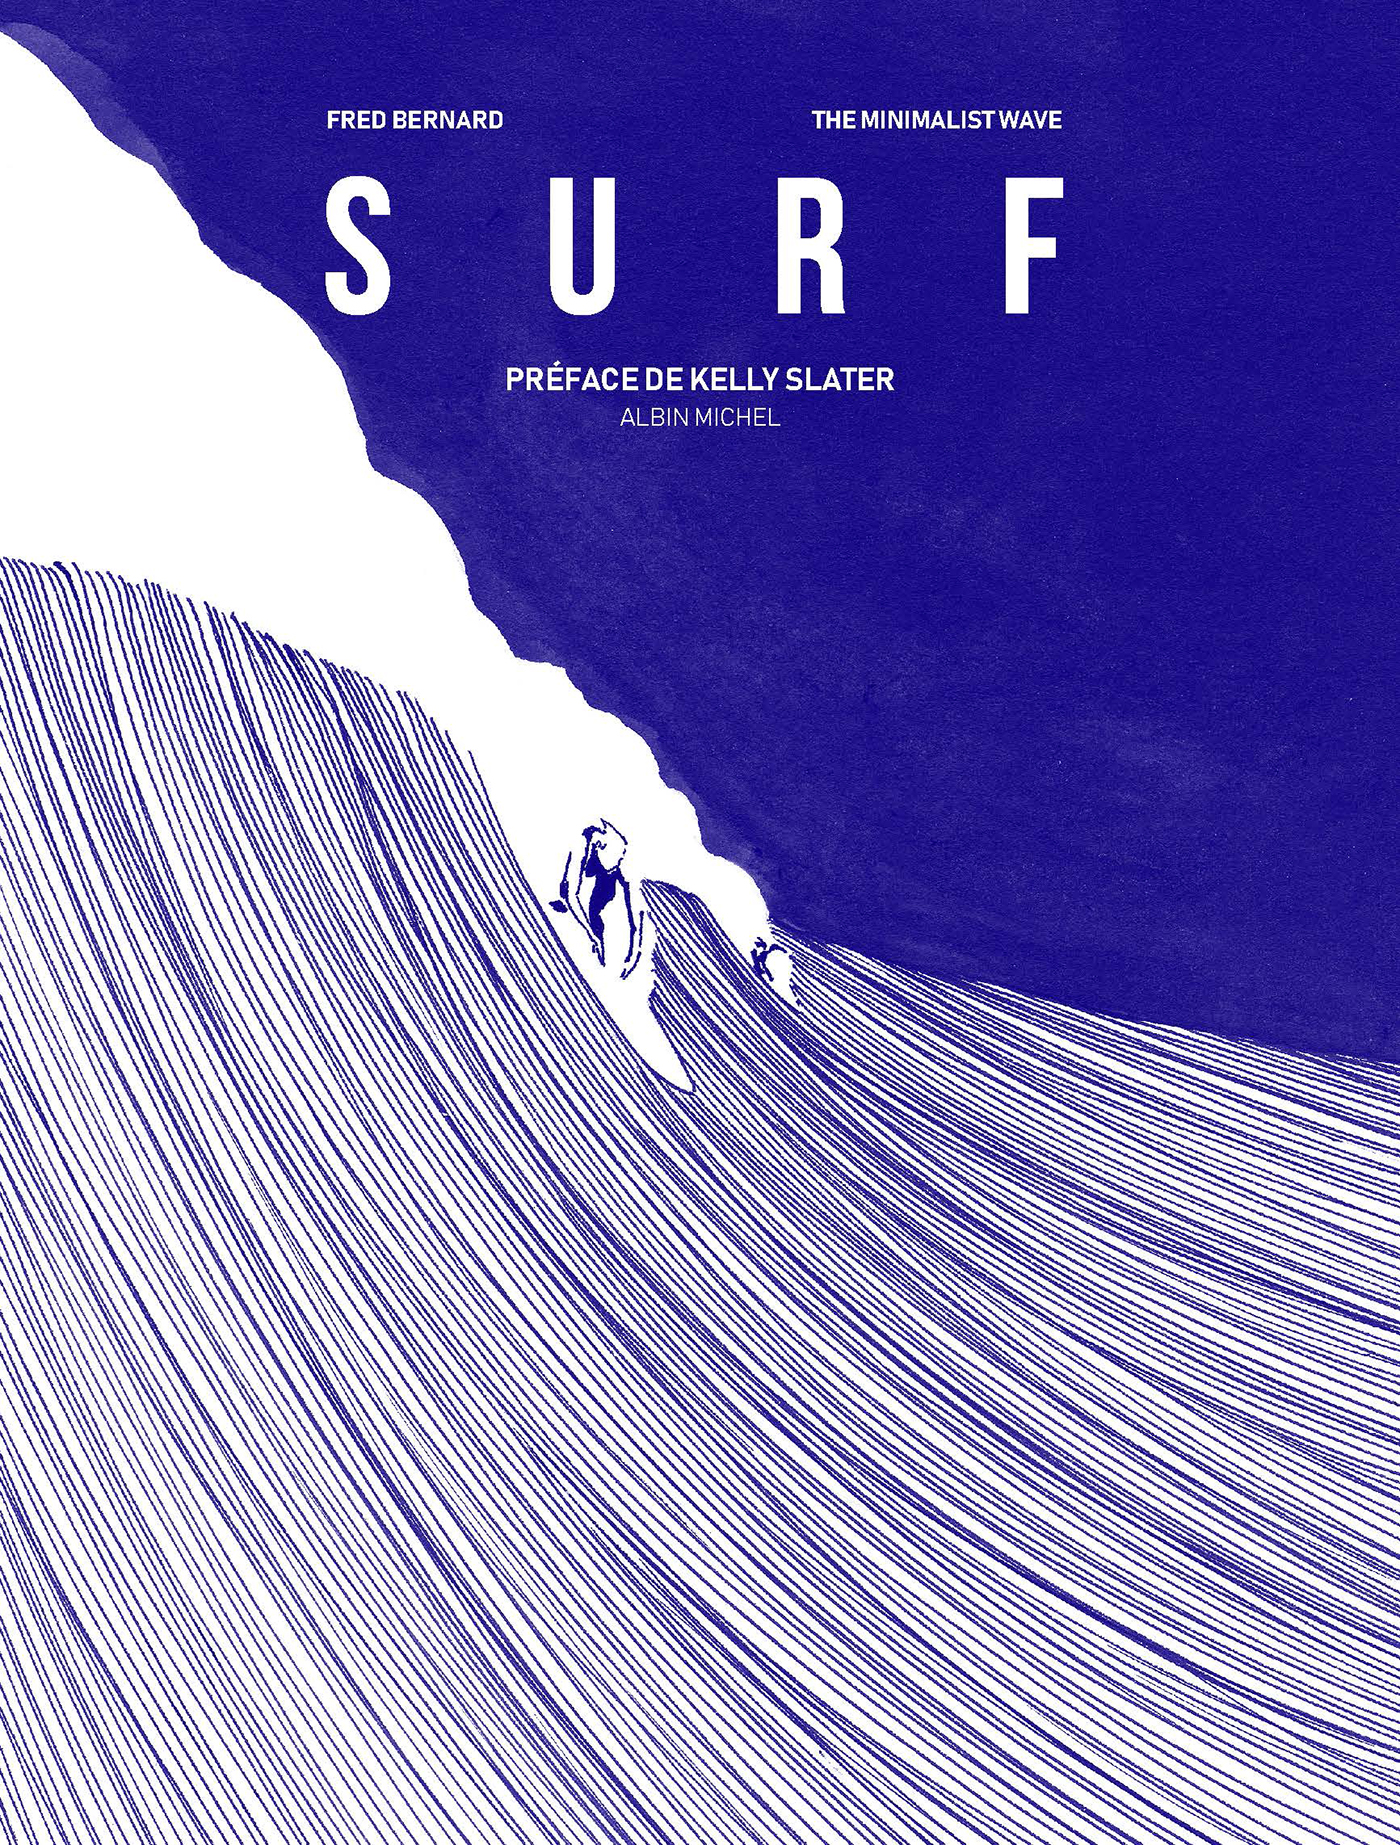 Couverture du livre Surf